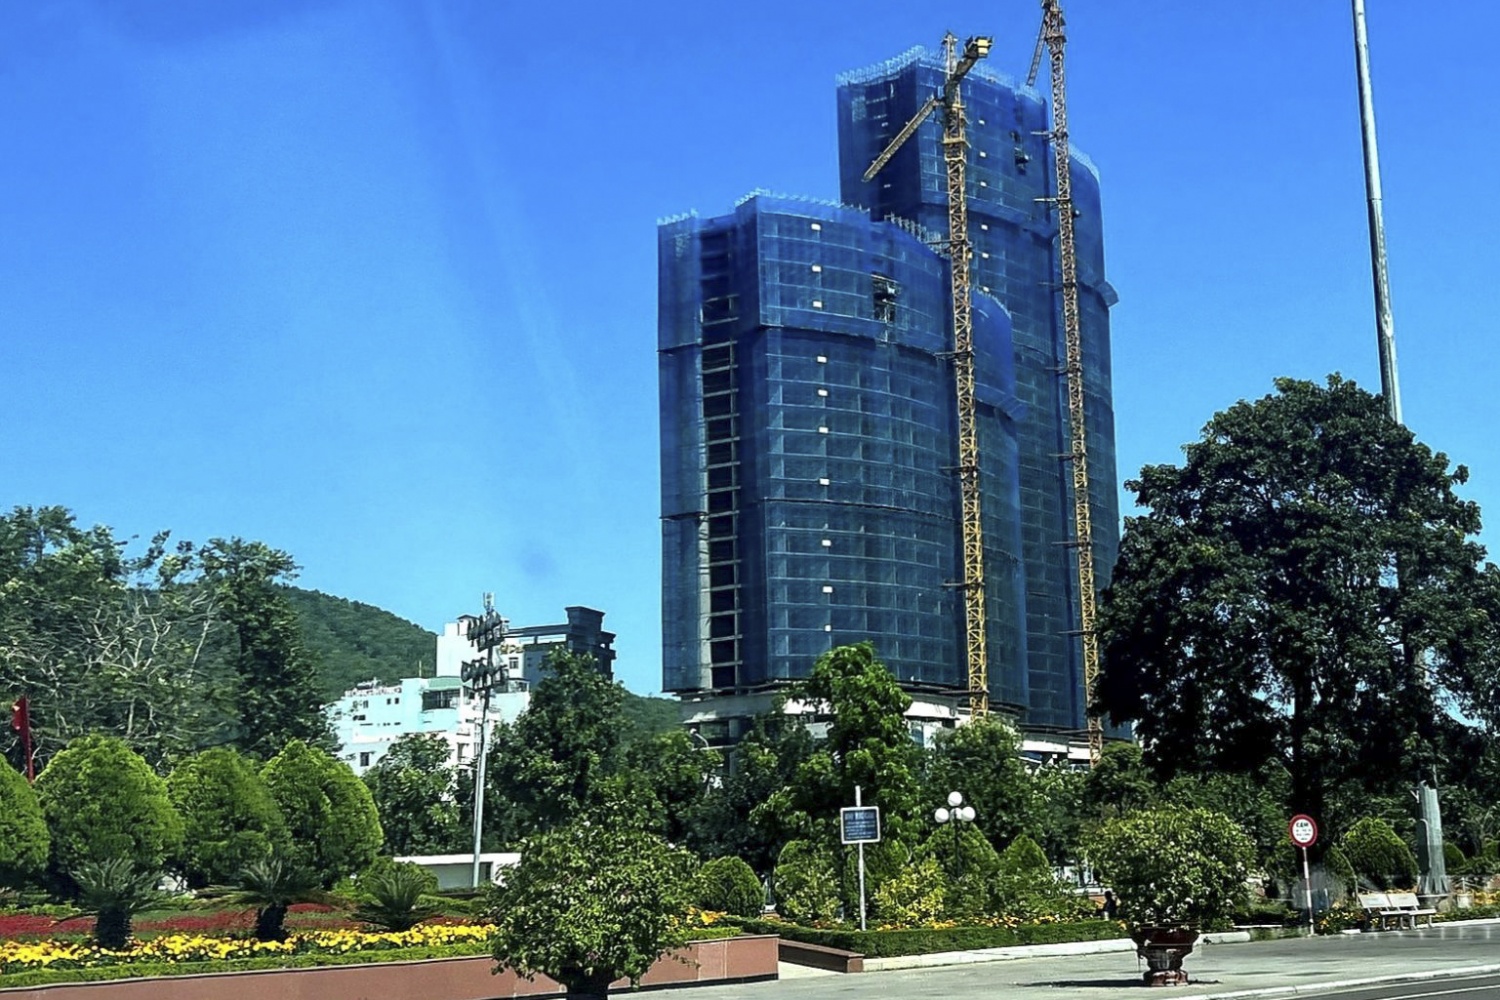 Tin bất động sản ngày 23/2: Chủ đầu tư dự án Tower Quy Nhơn bị xử phạt 500 triệu đồng